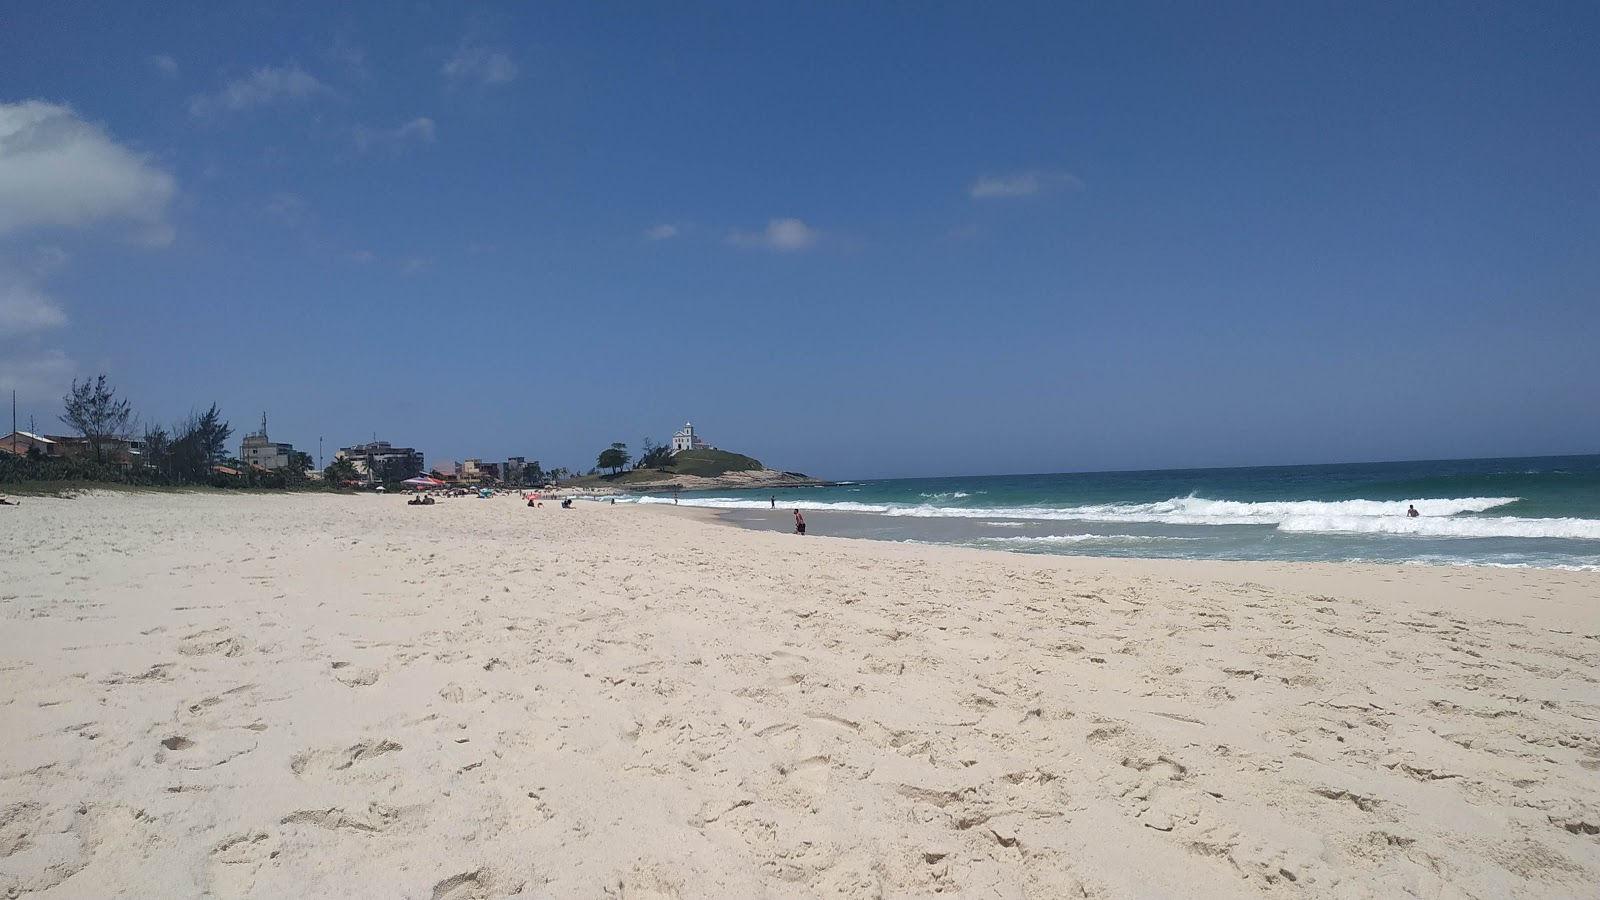 Fotografie cu Praia da Vila cu o suprafață de nisip fin strălucitor